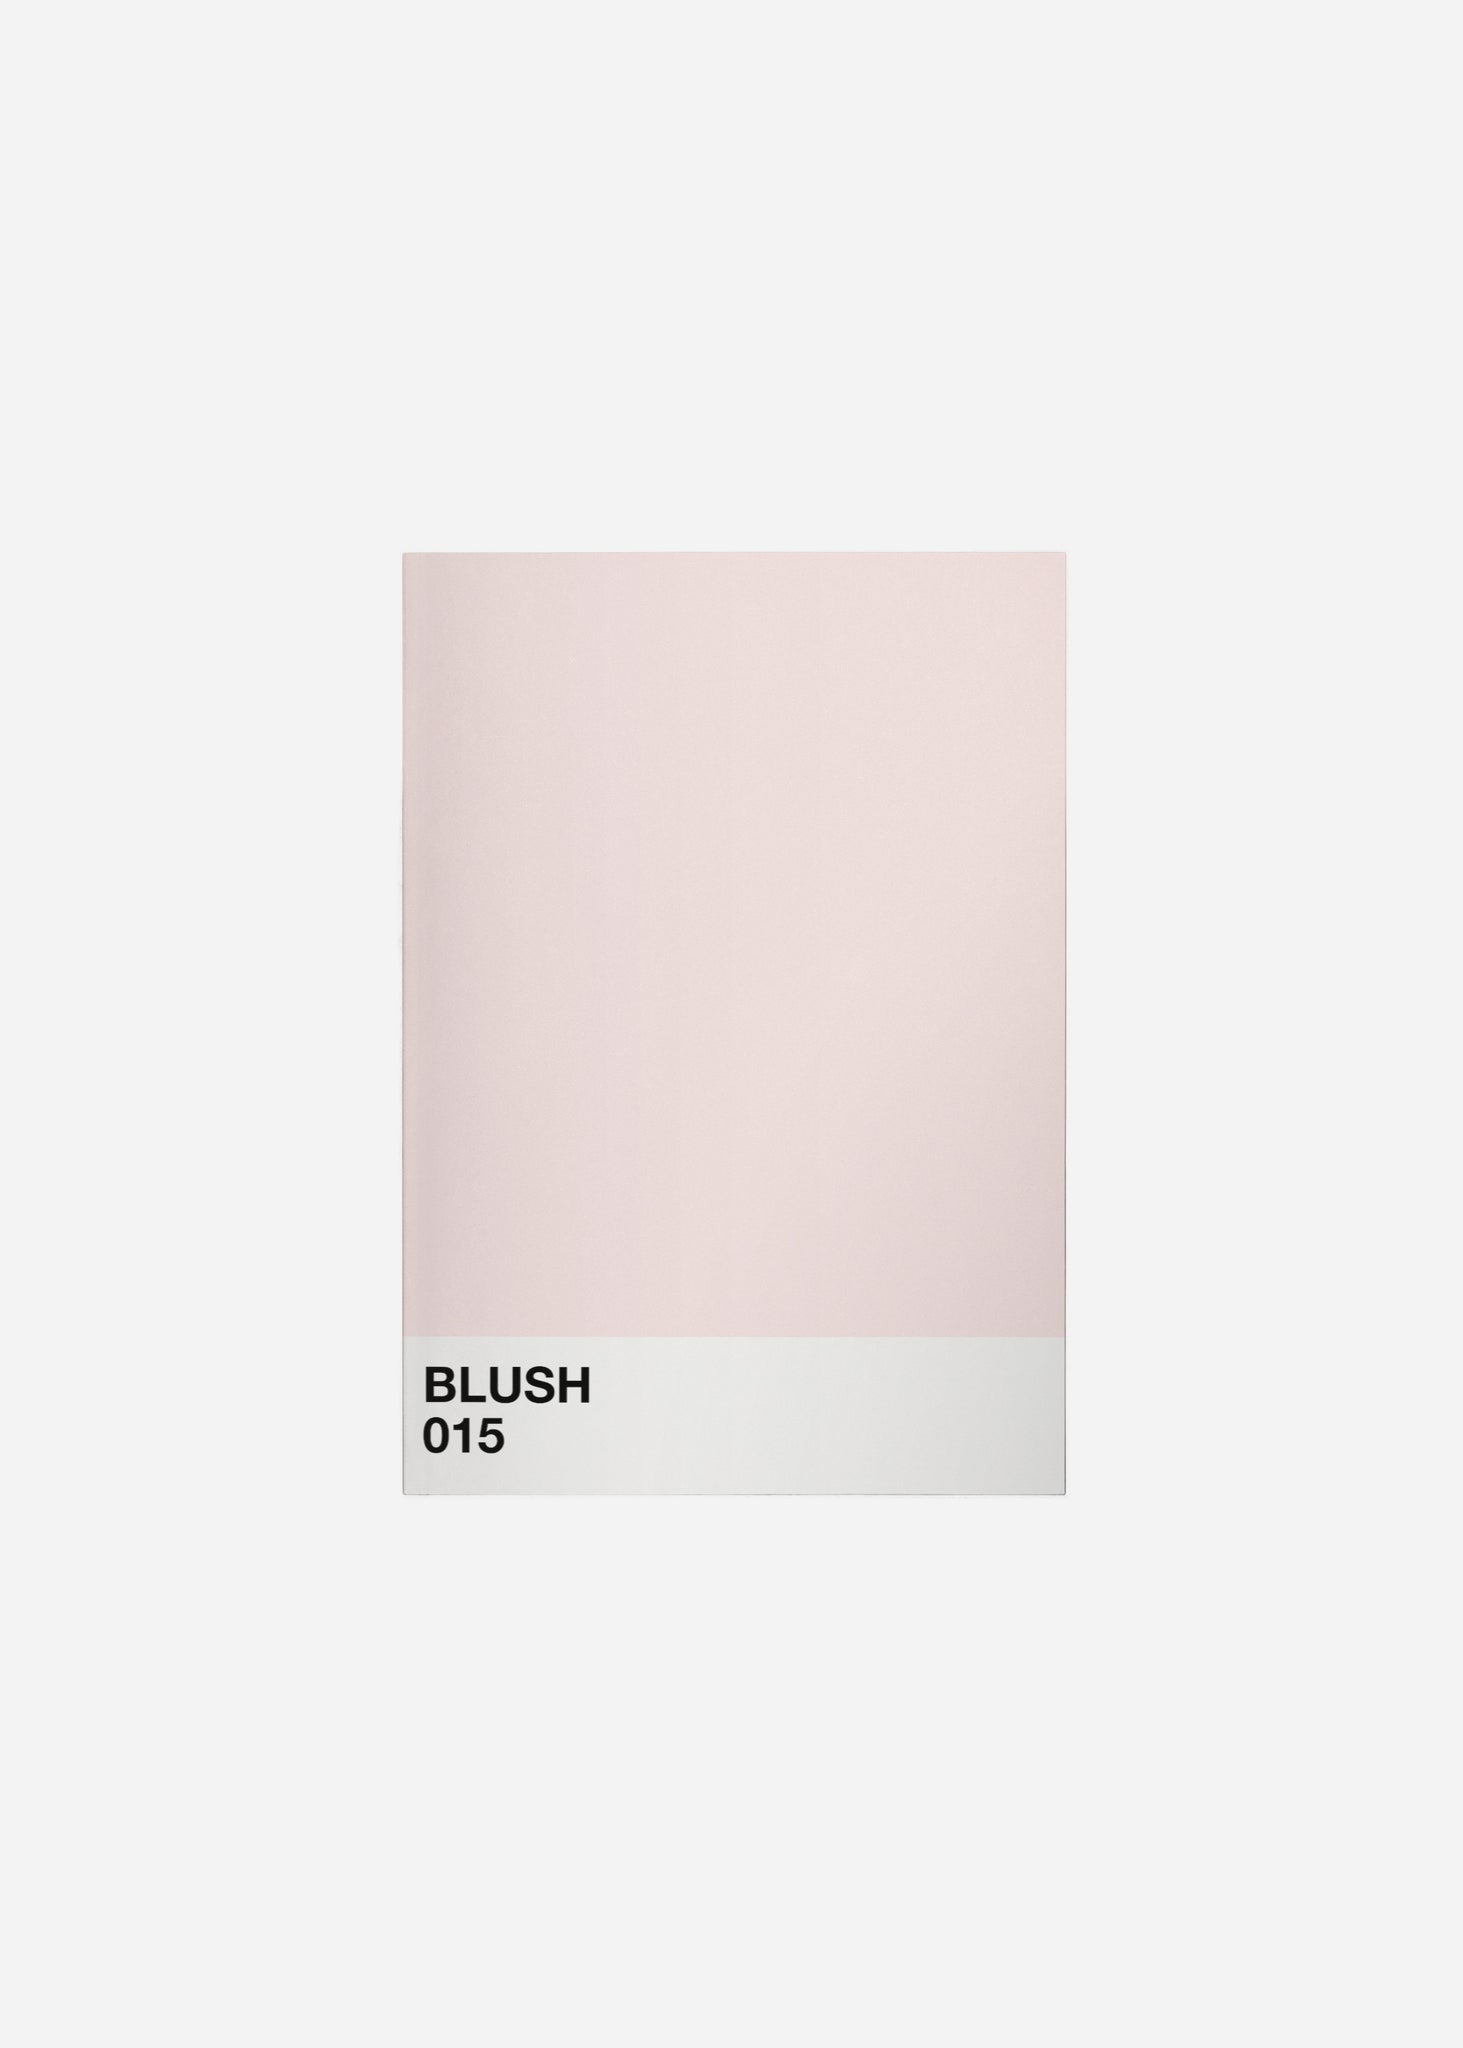 blush Fine Art Print